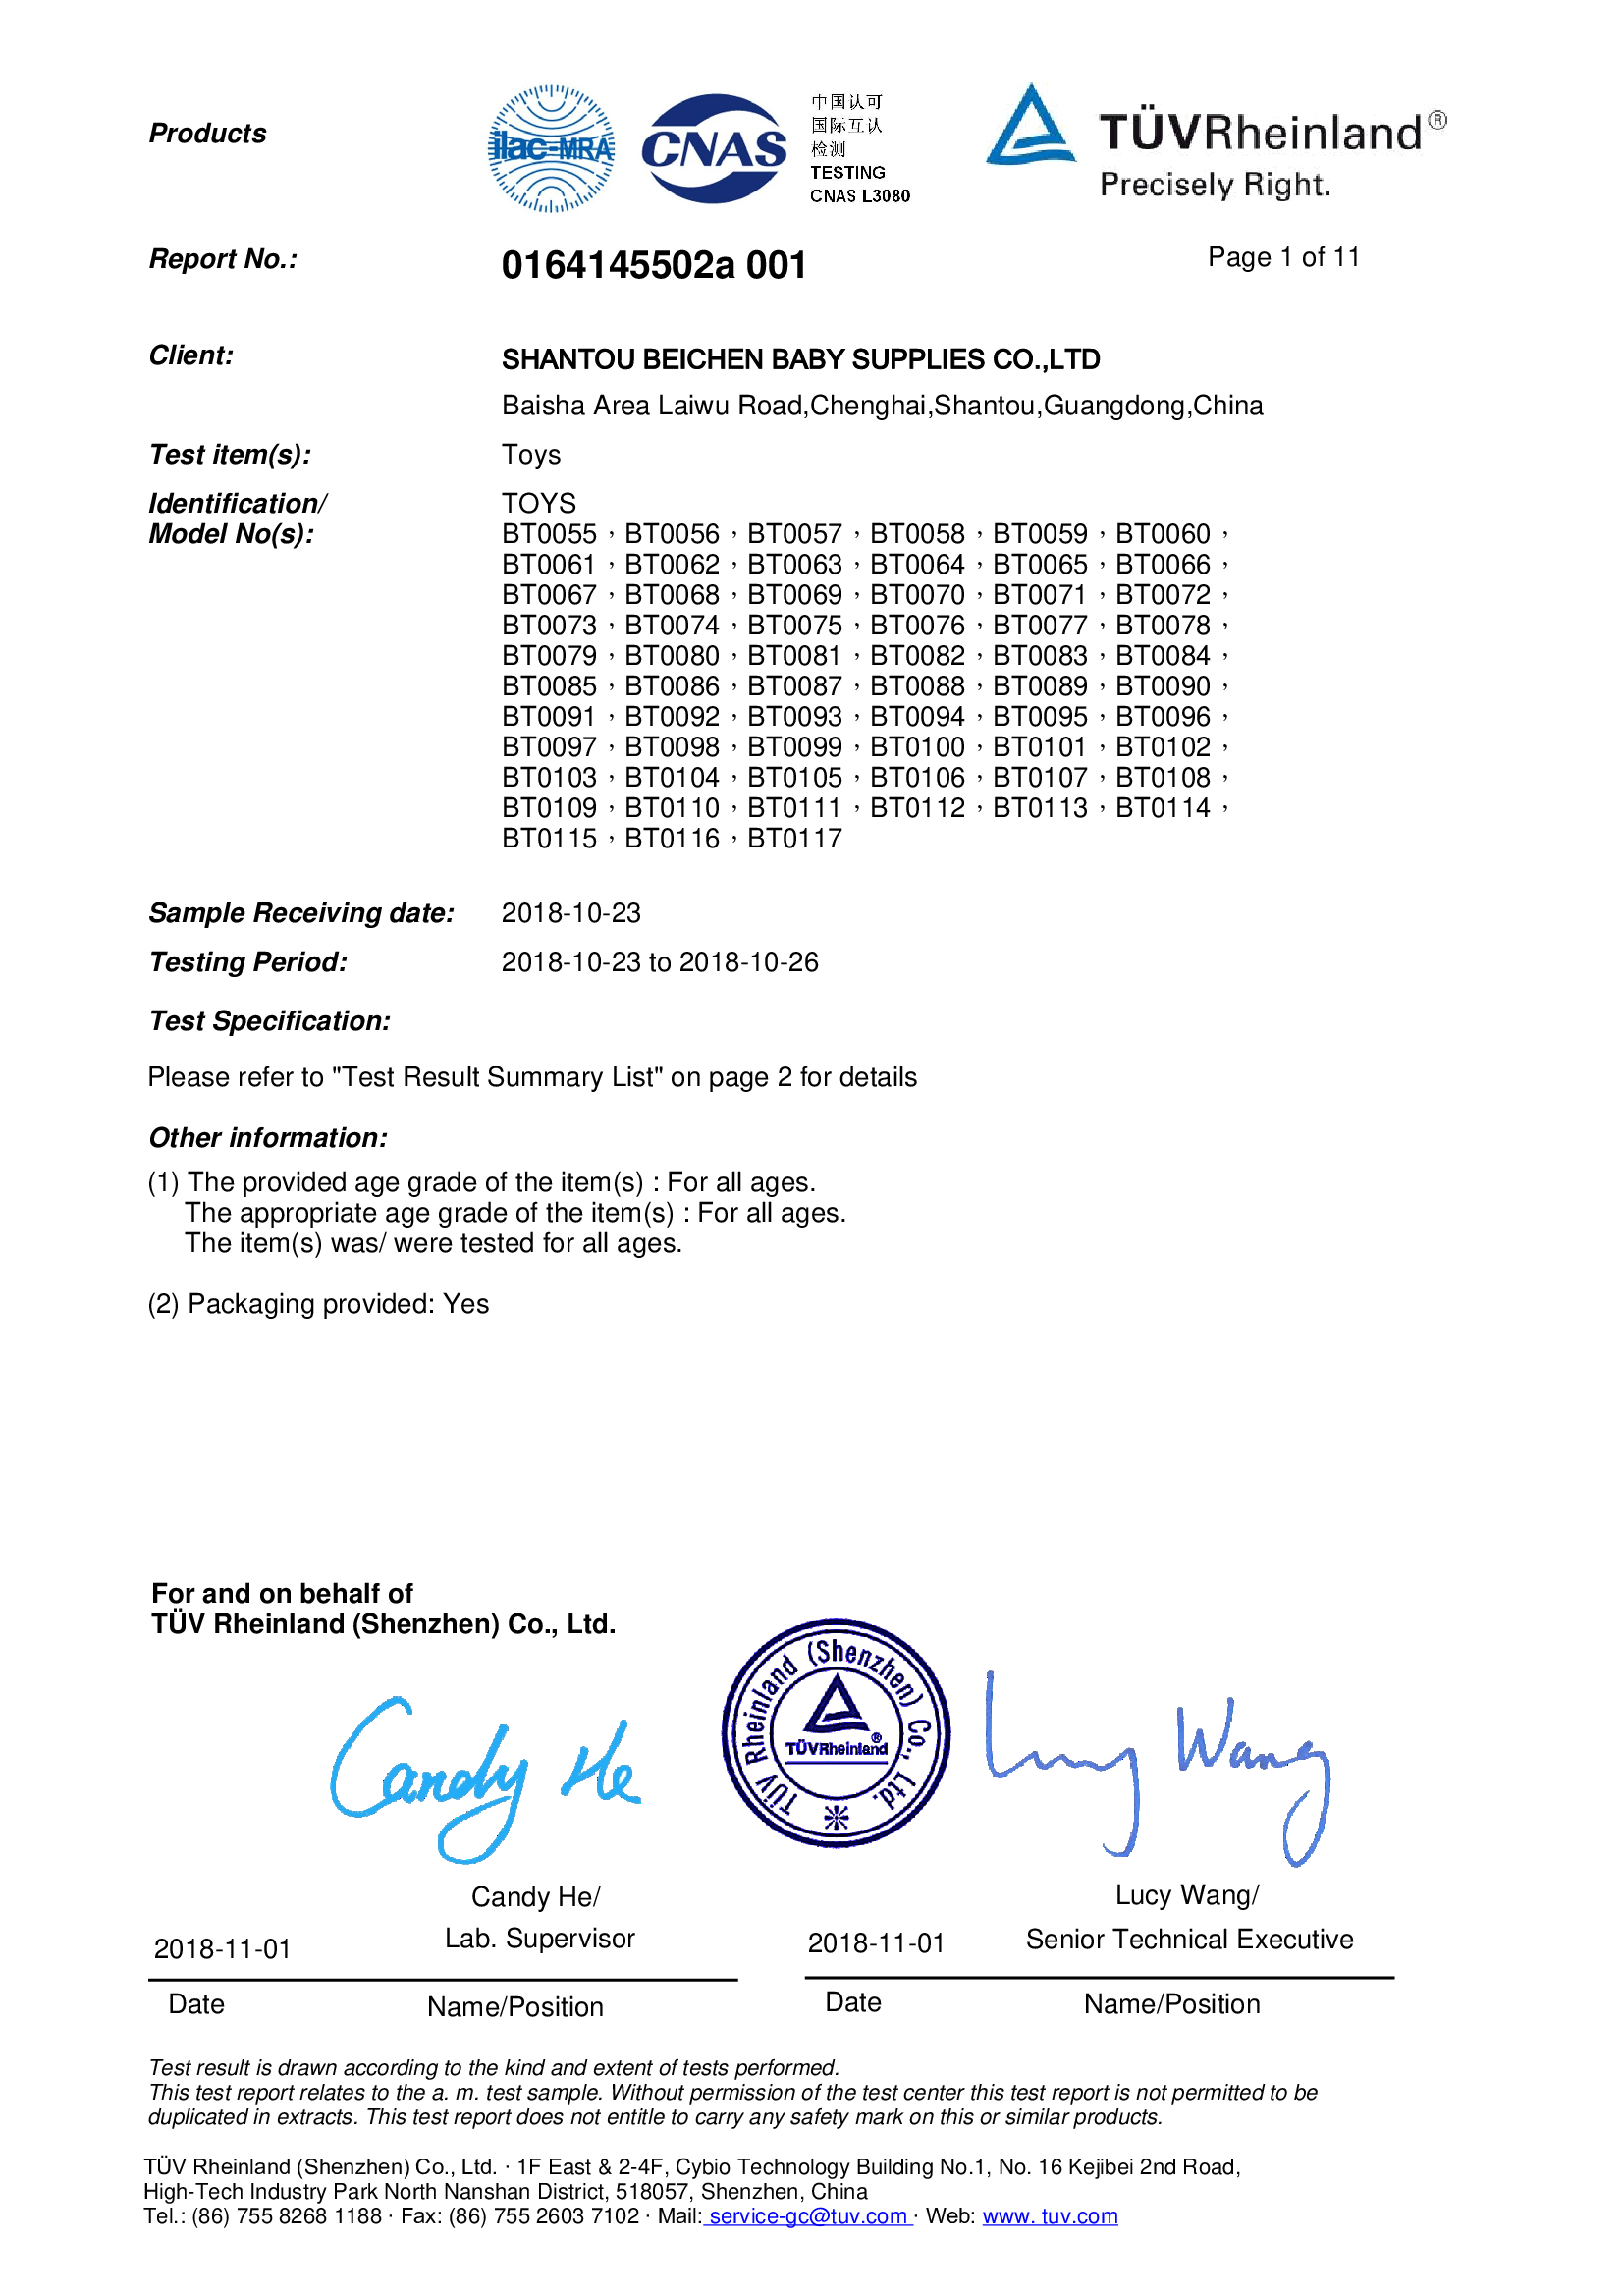 EN-71 Certificates